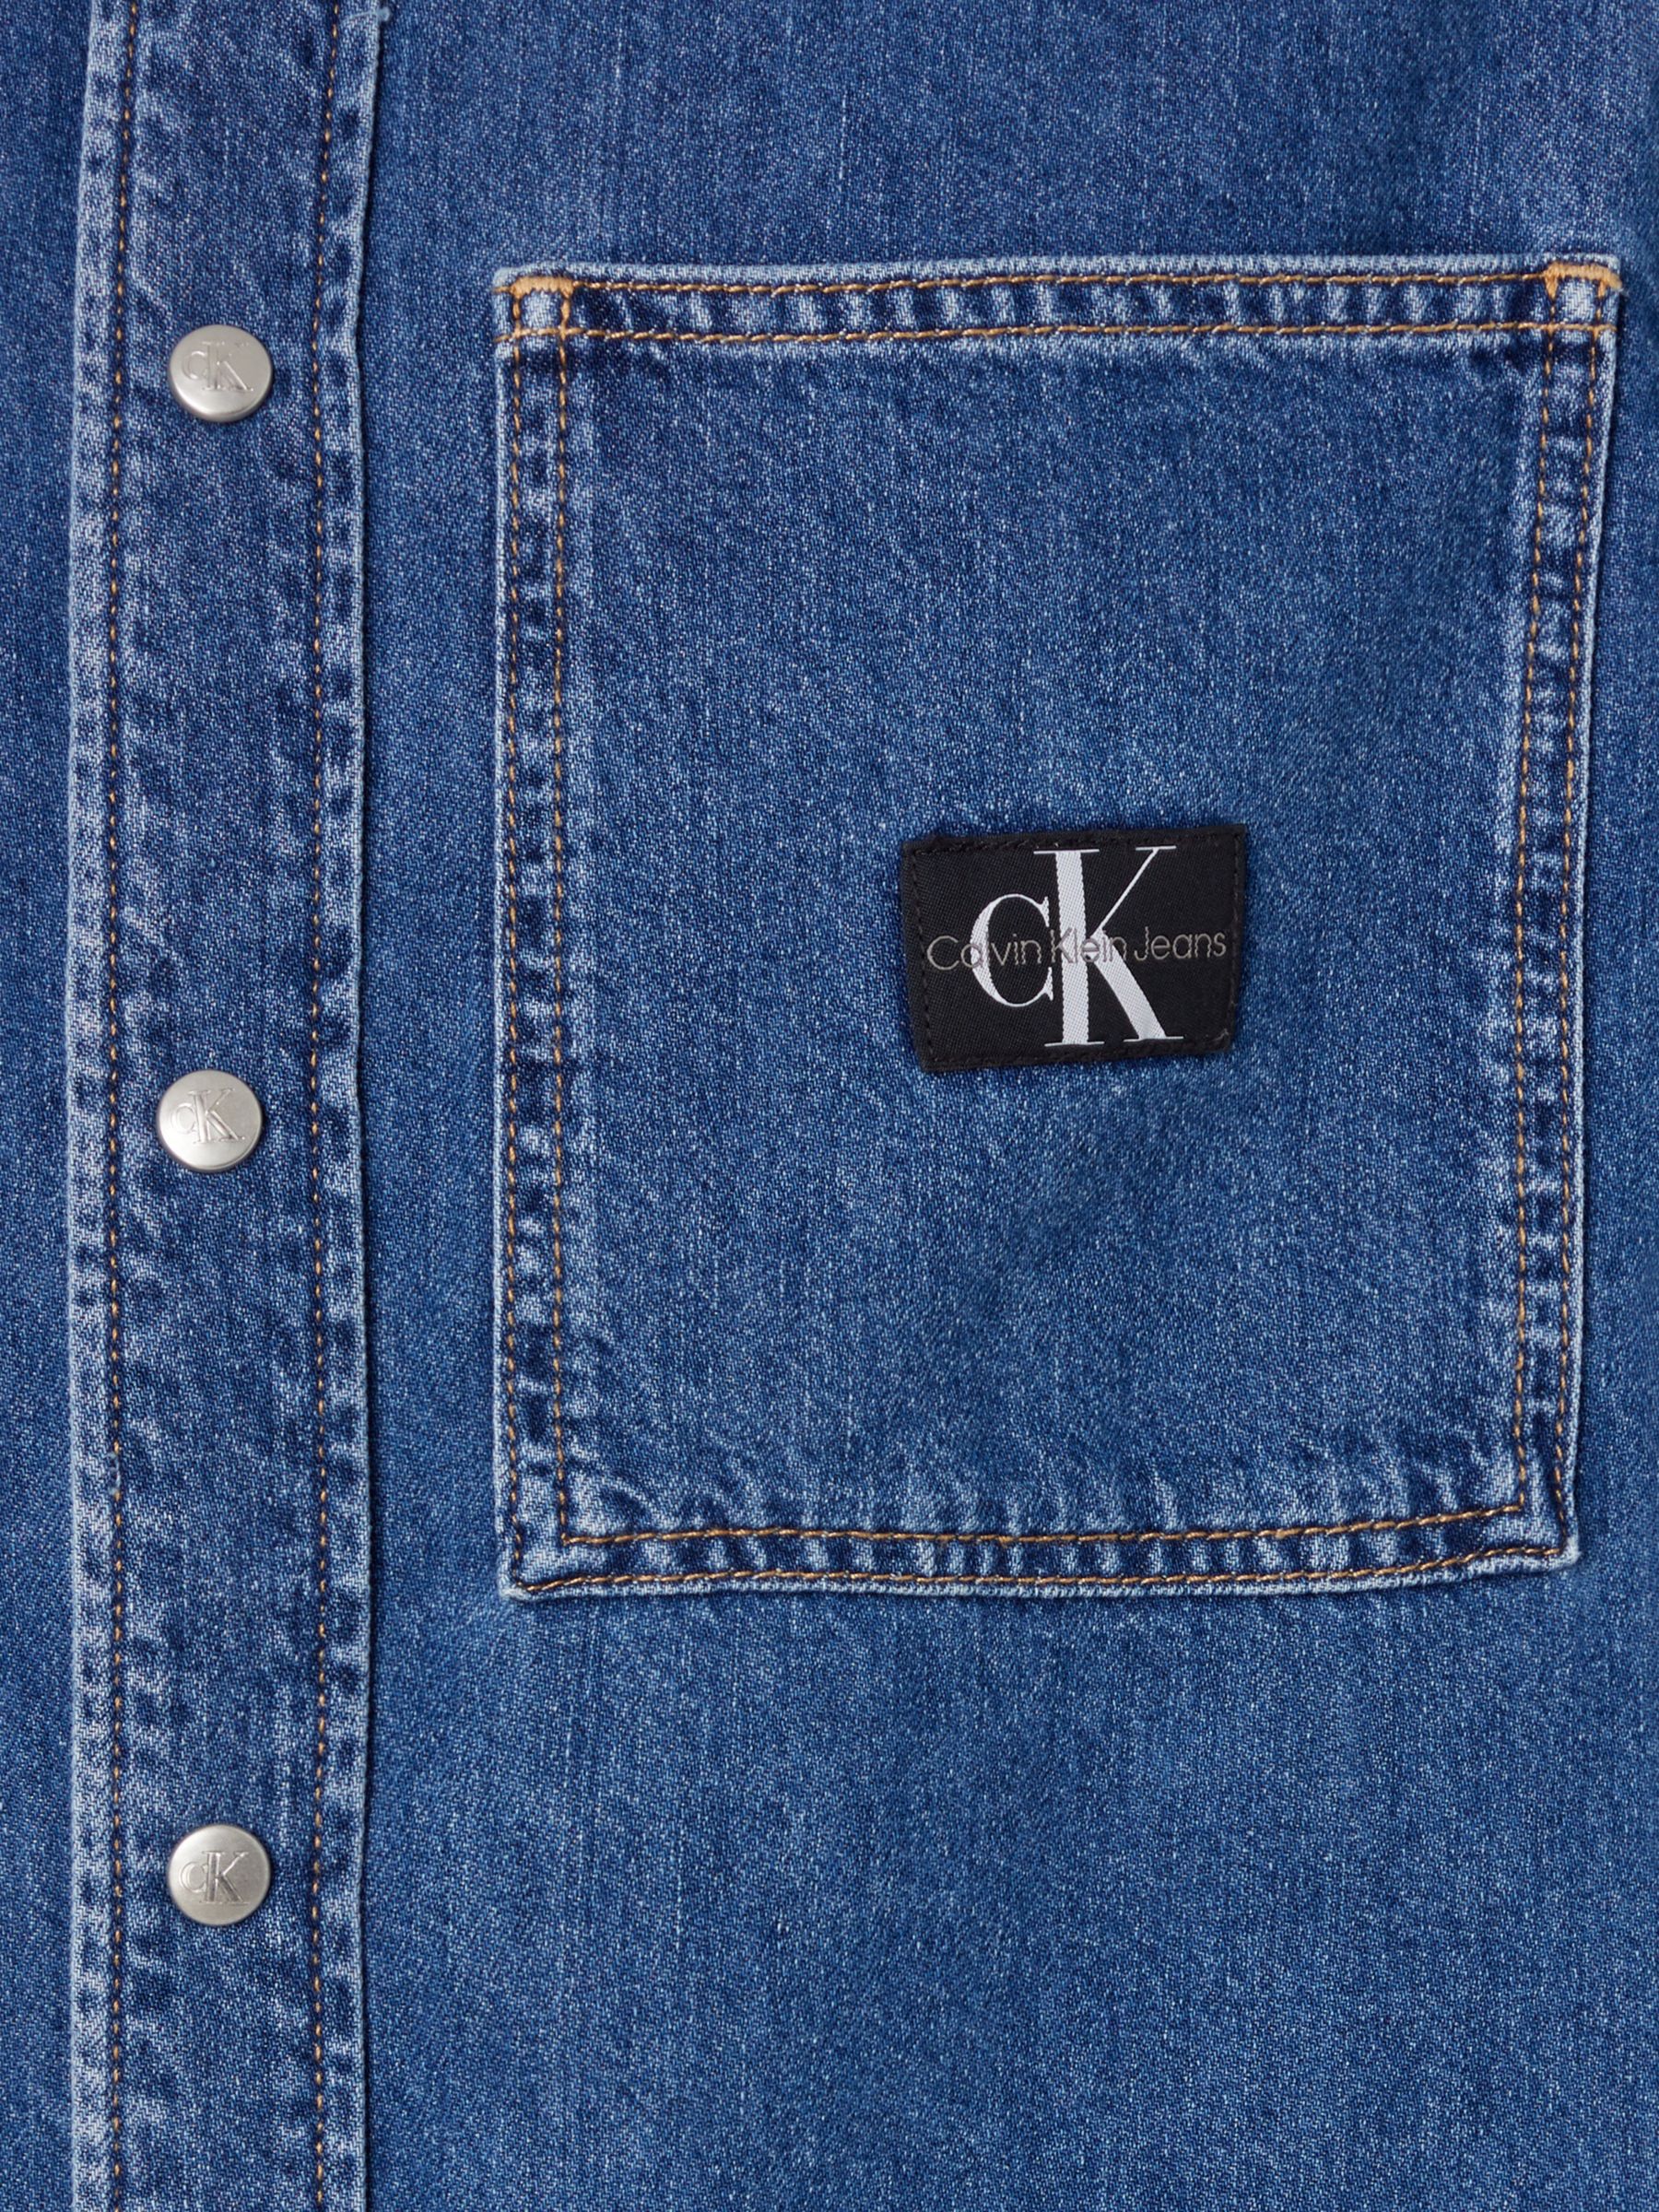 Calvin Klein Jeans Relaxed Denim Shirt, Denim Dark, M